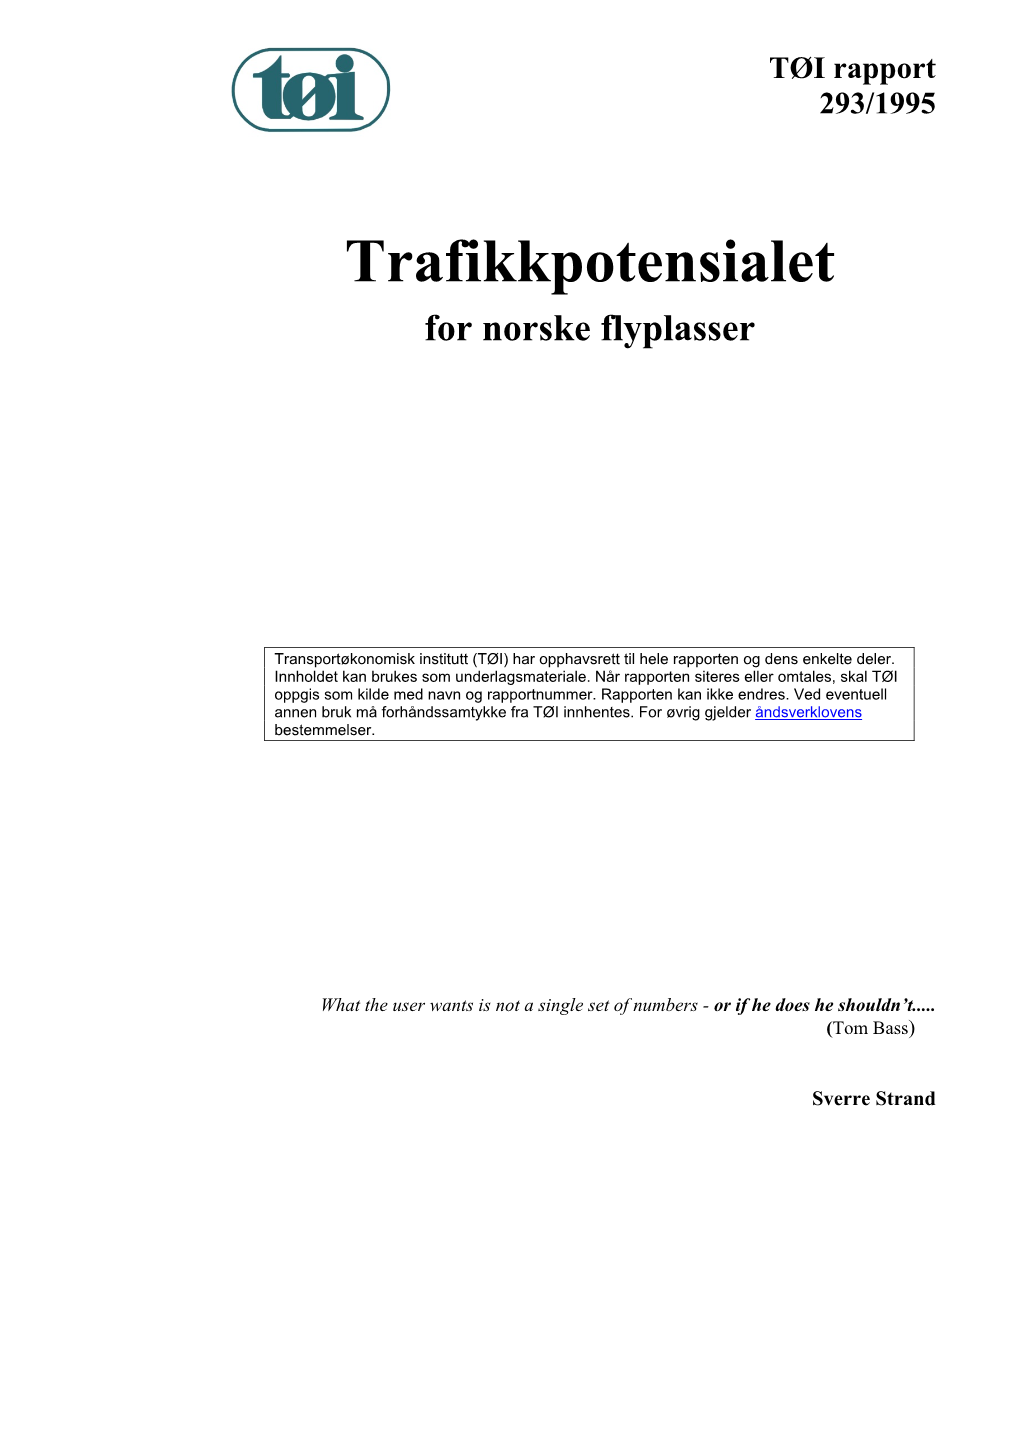 TØI Rapport 293/1995 Trafikkpotensialet for Norske Flyplasser